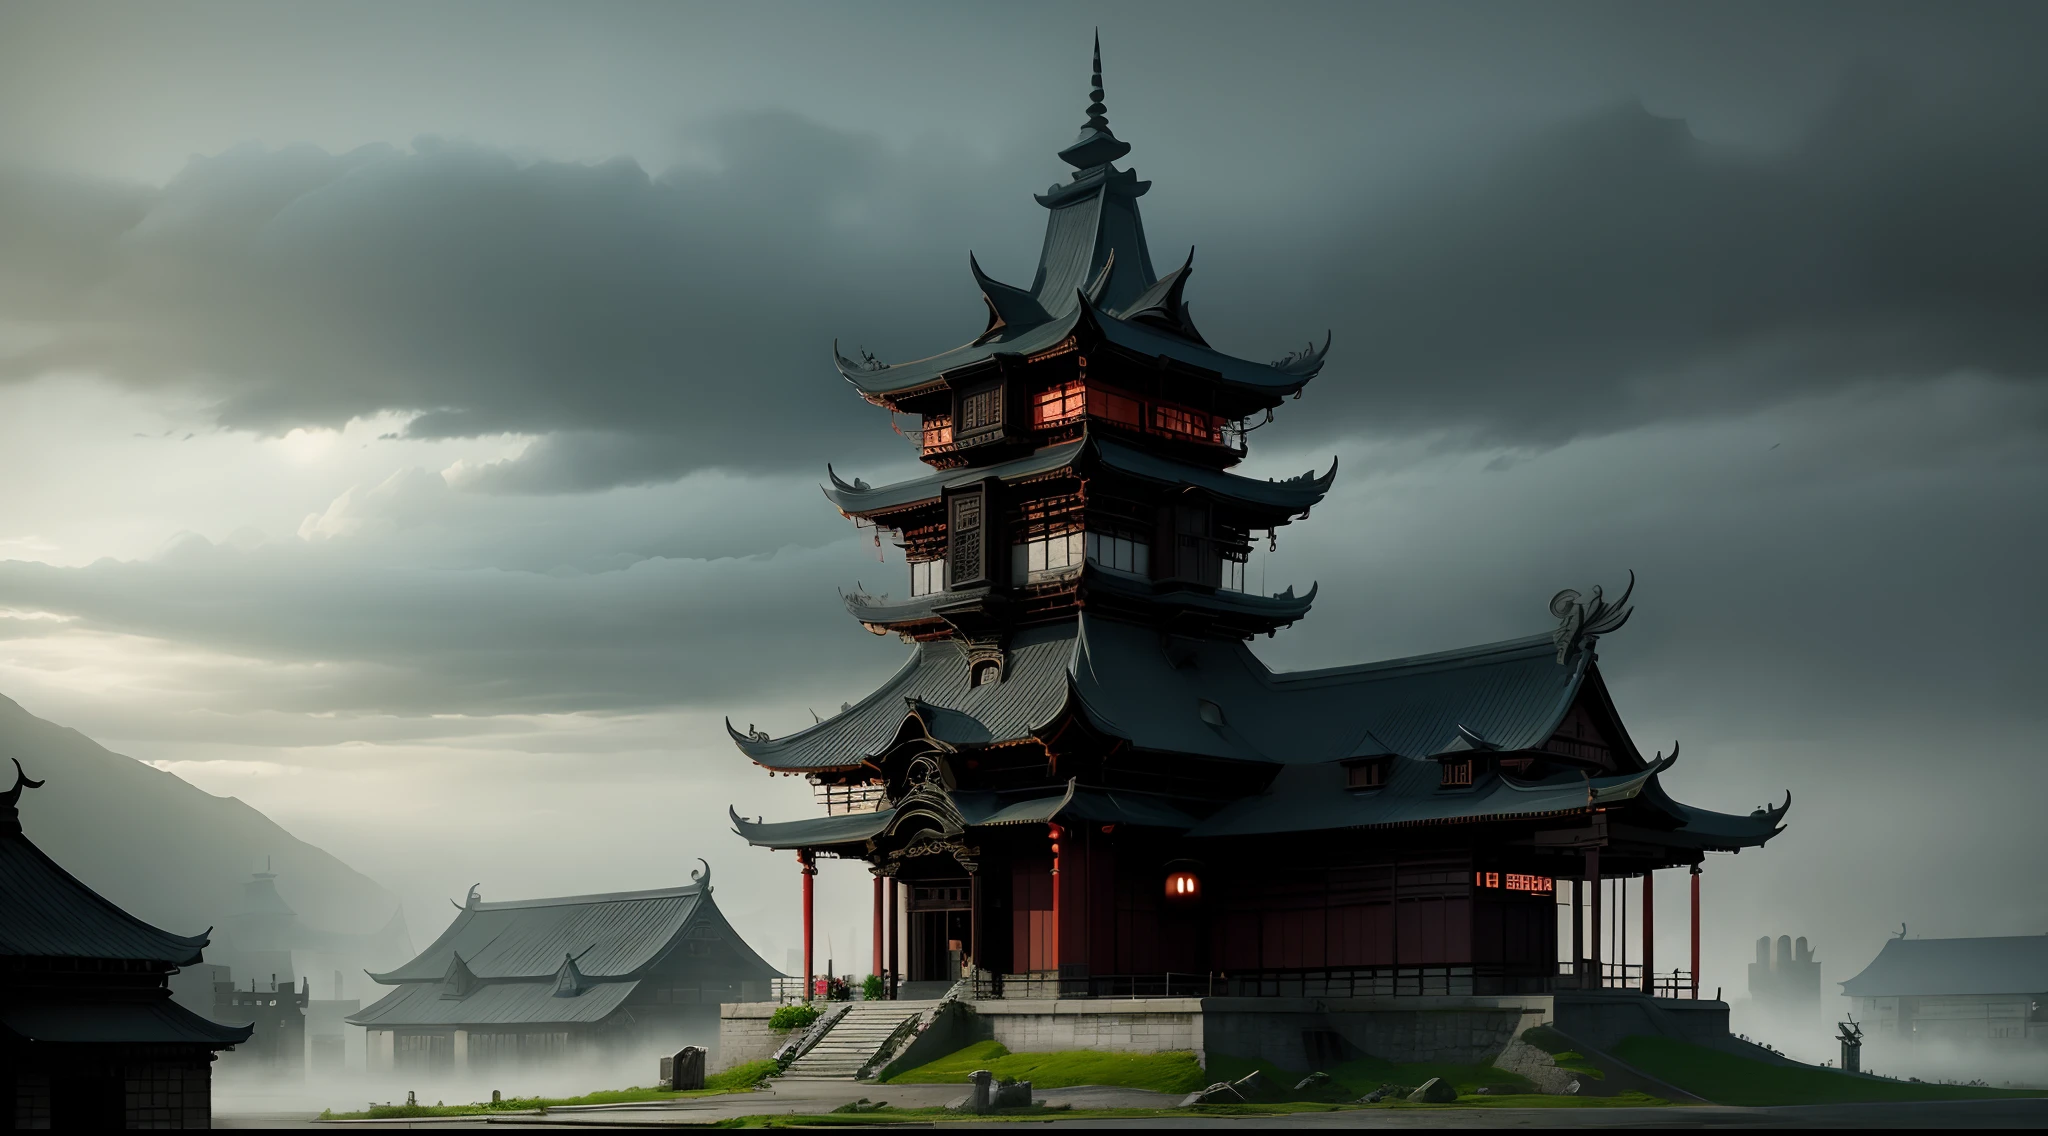 中世纪, 中国建筑, 黑暗的. 阴沉, 黑暗的 clouds, 浓雾